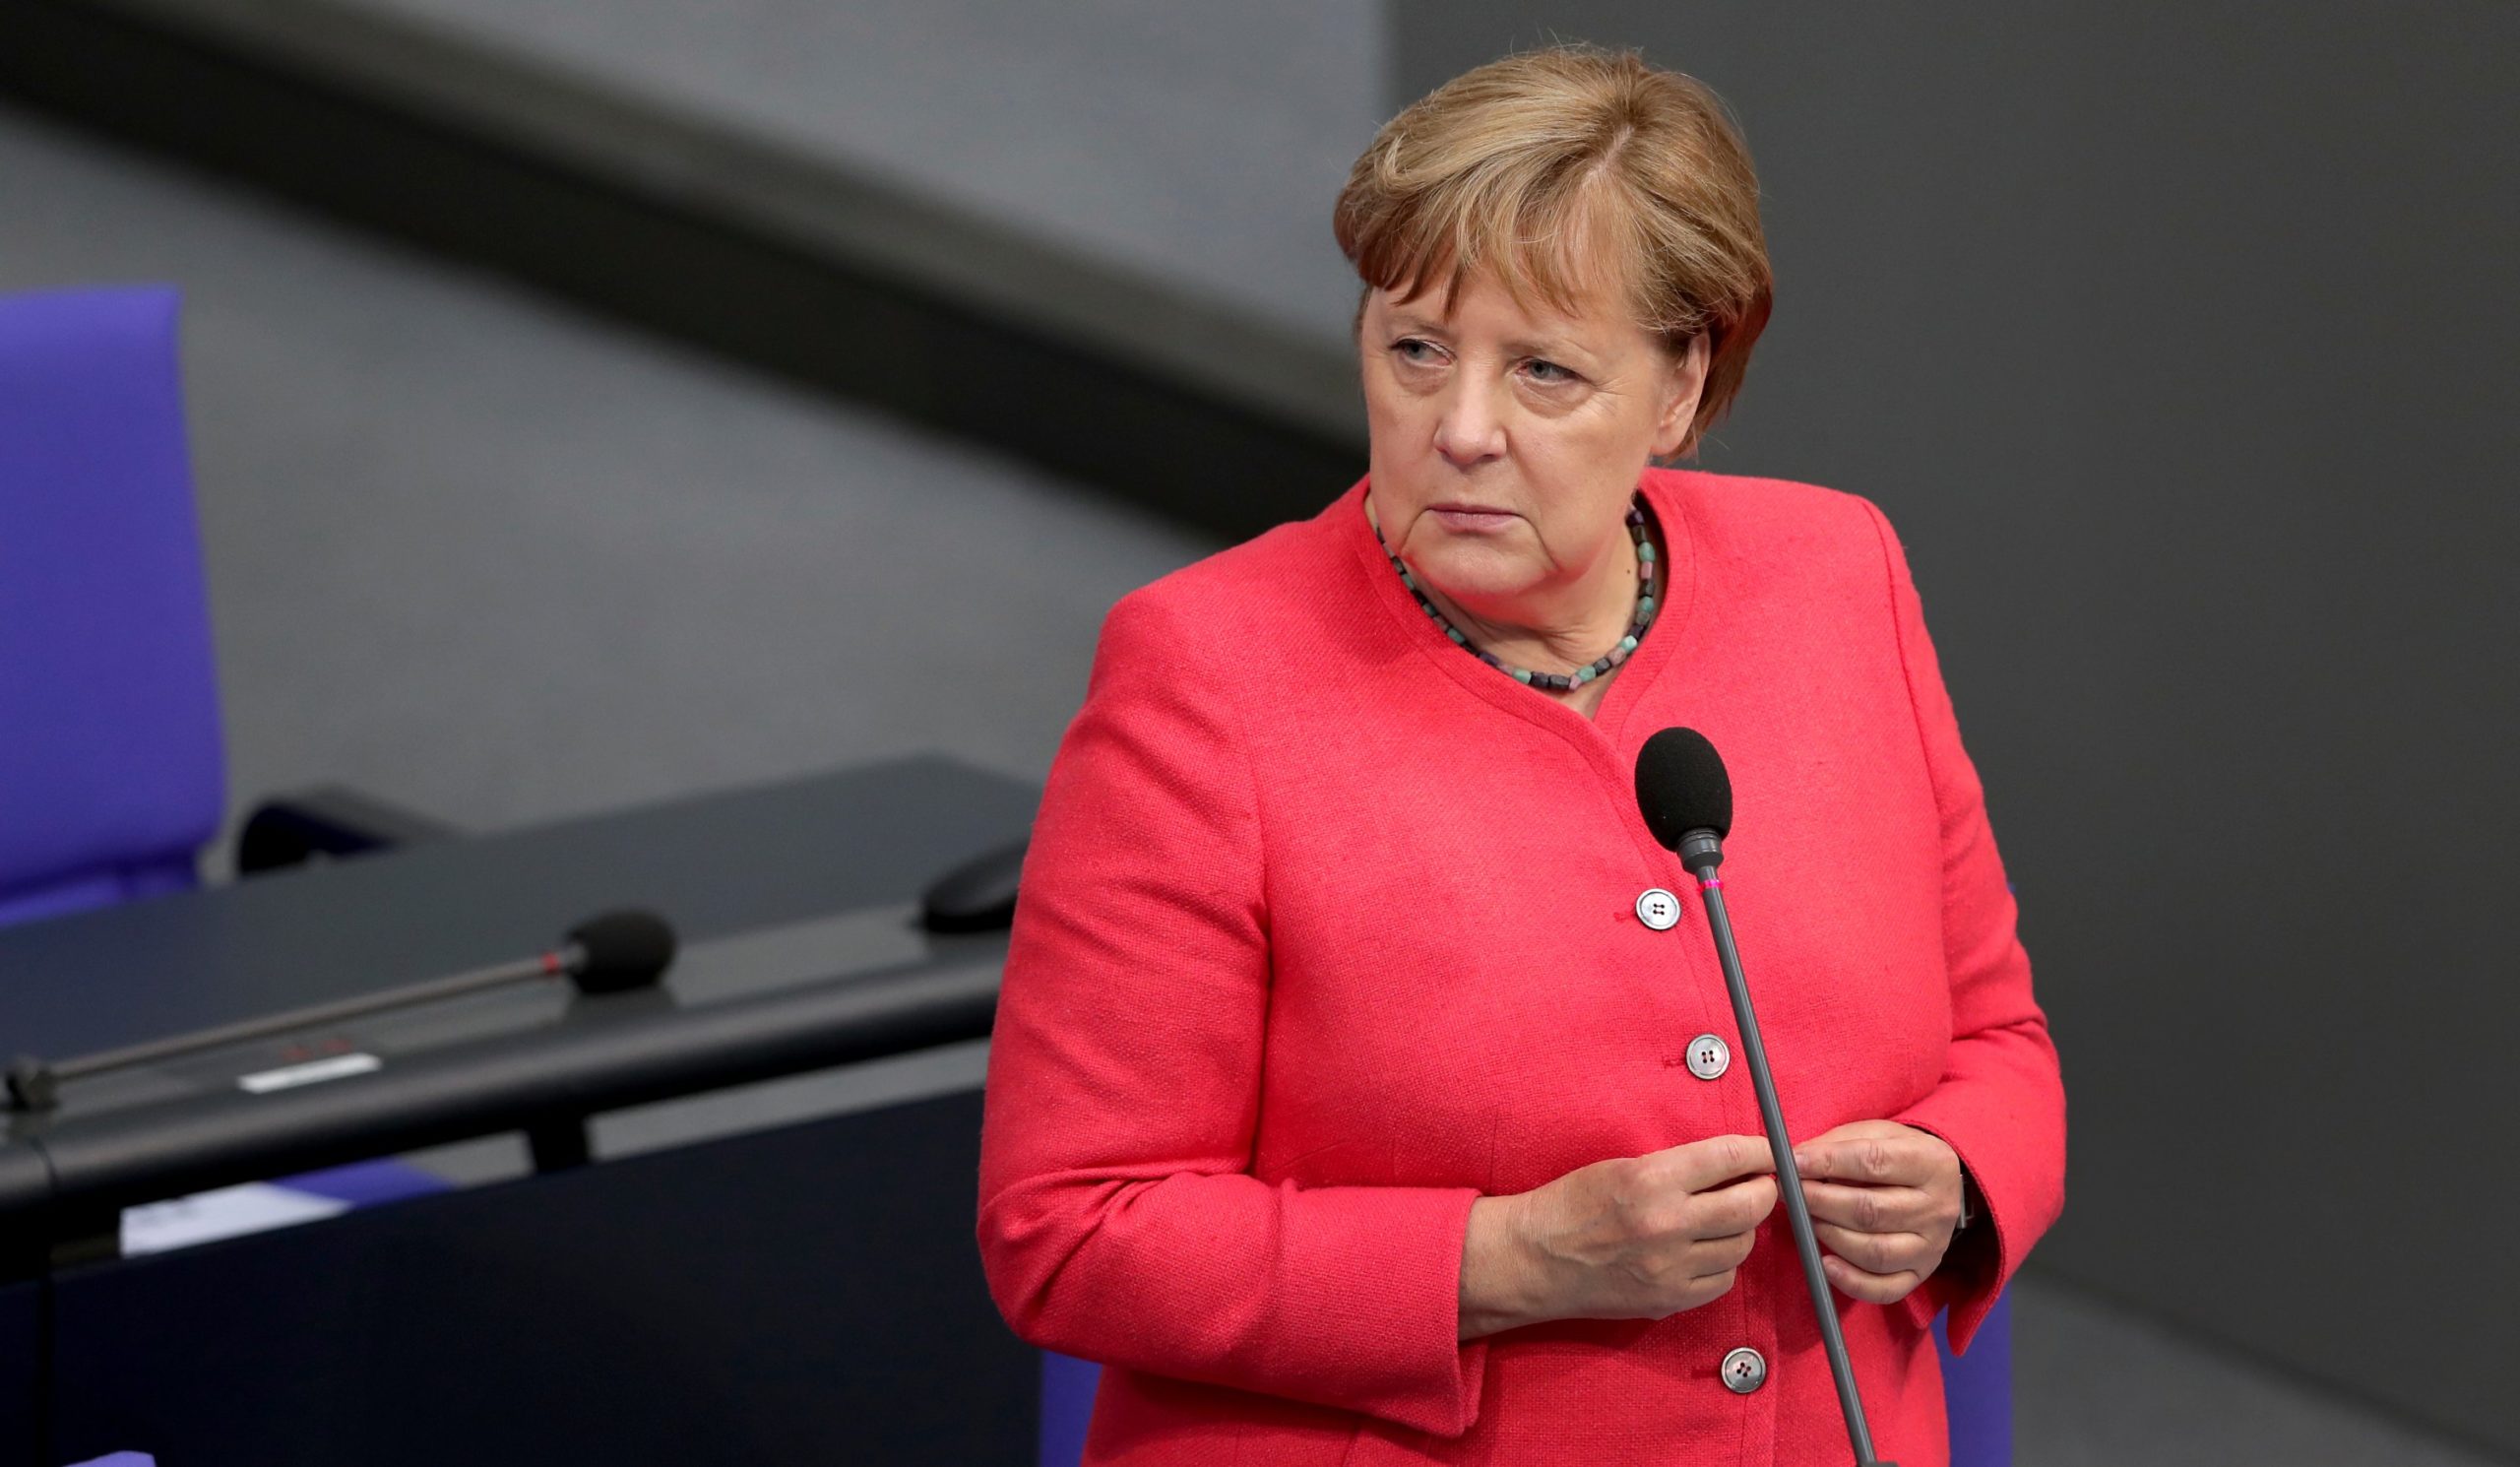 Canciller alemana Angela Merkel recibe primera dosis de la vacuna de AstraZeneca